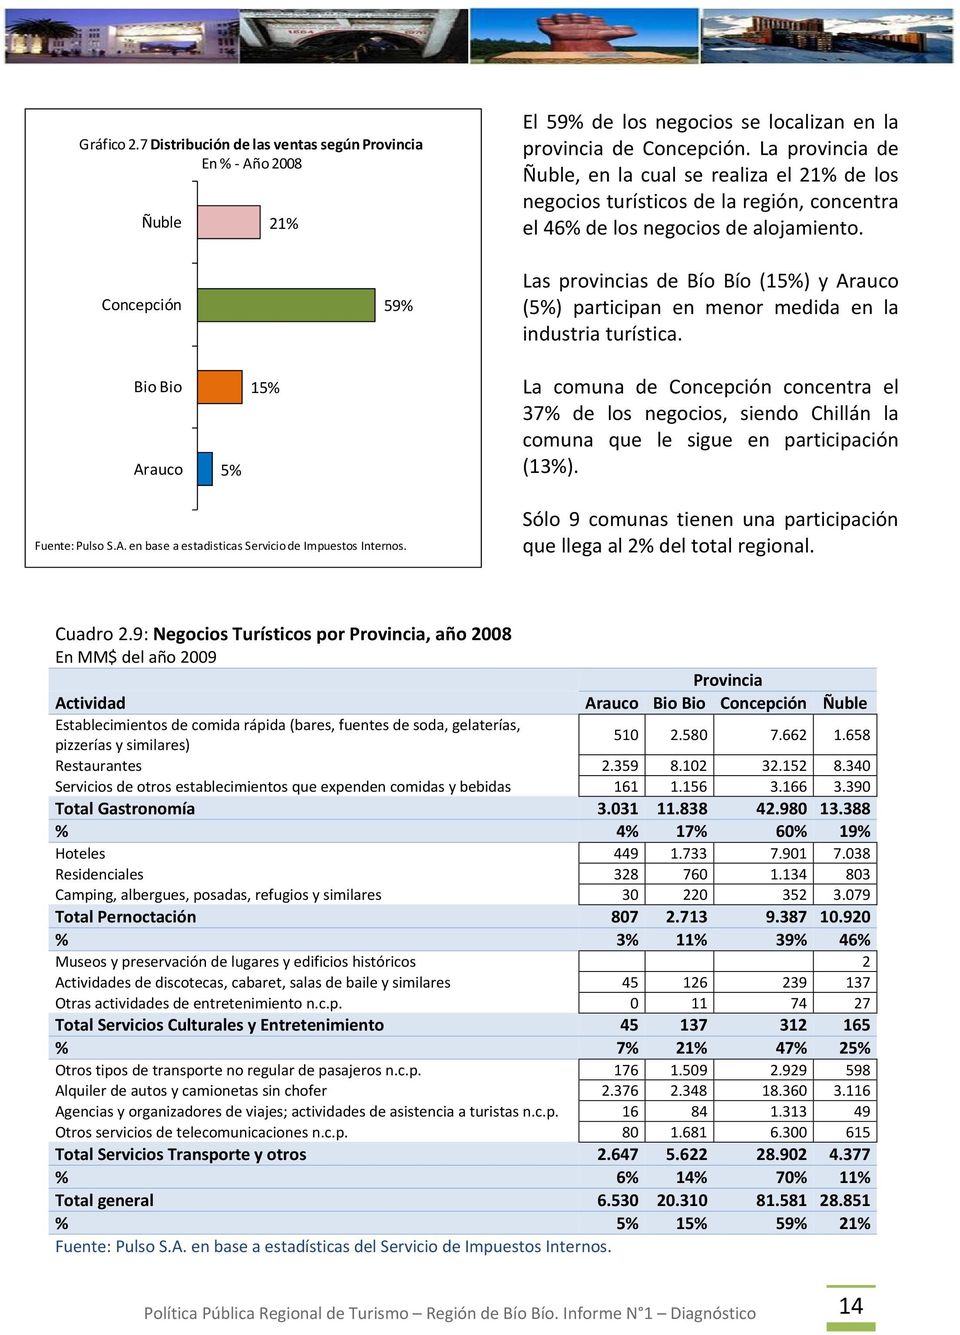 Concepción 59% Las provincias de Bío Bío (15%) y Arauco (5%) participan en menor medida en la industria turística.